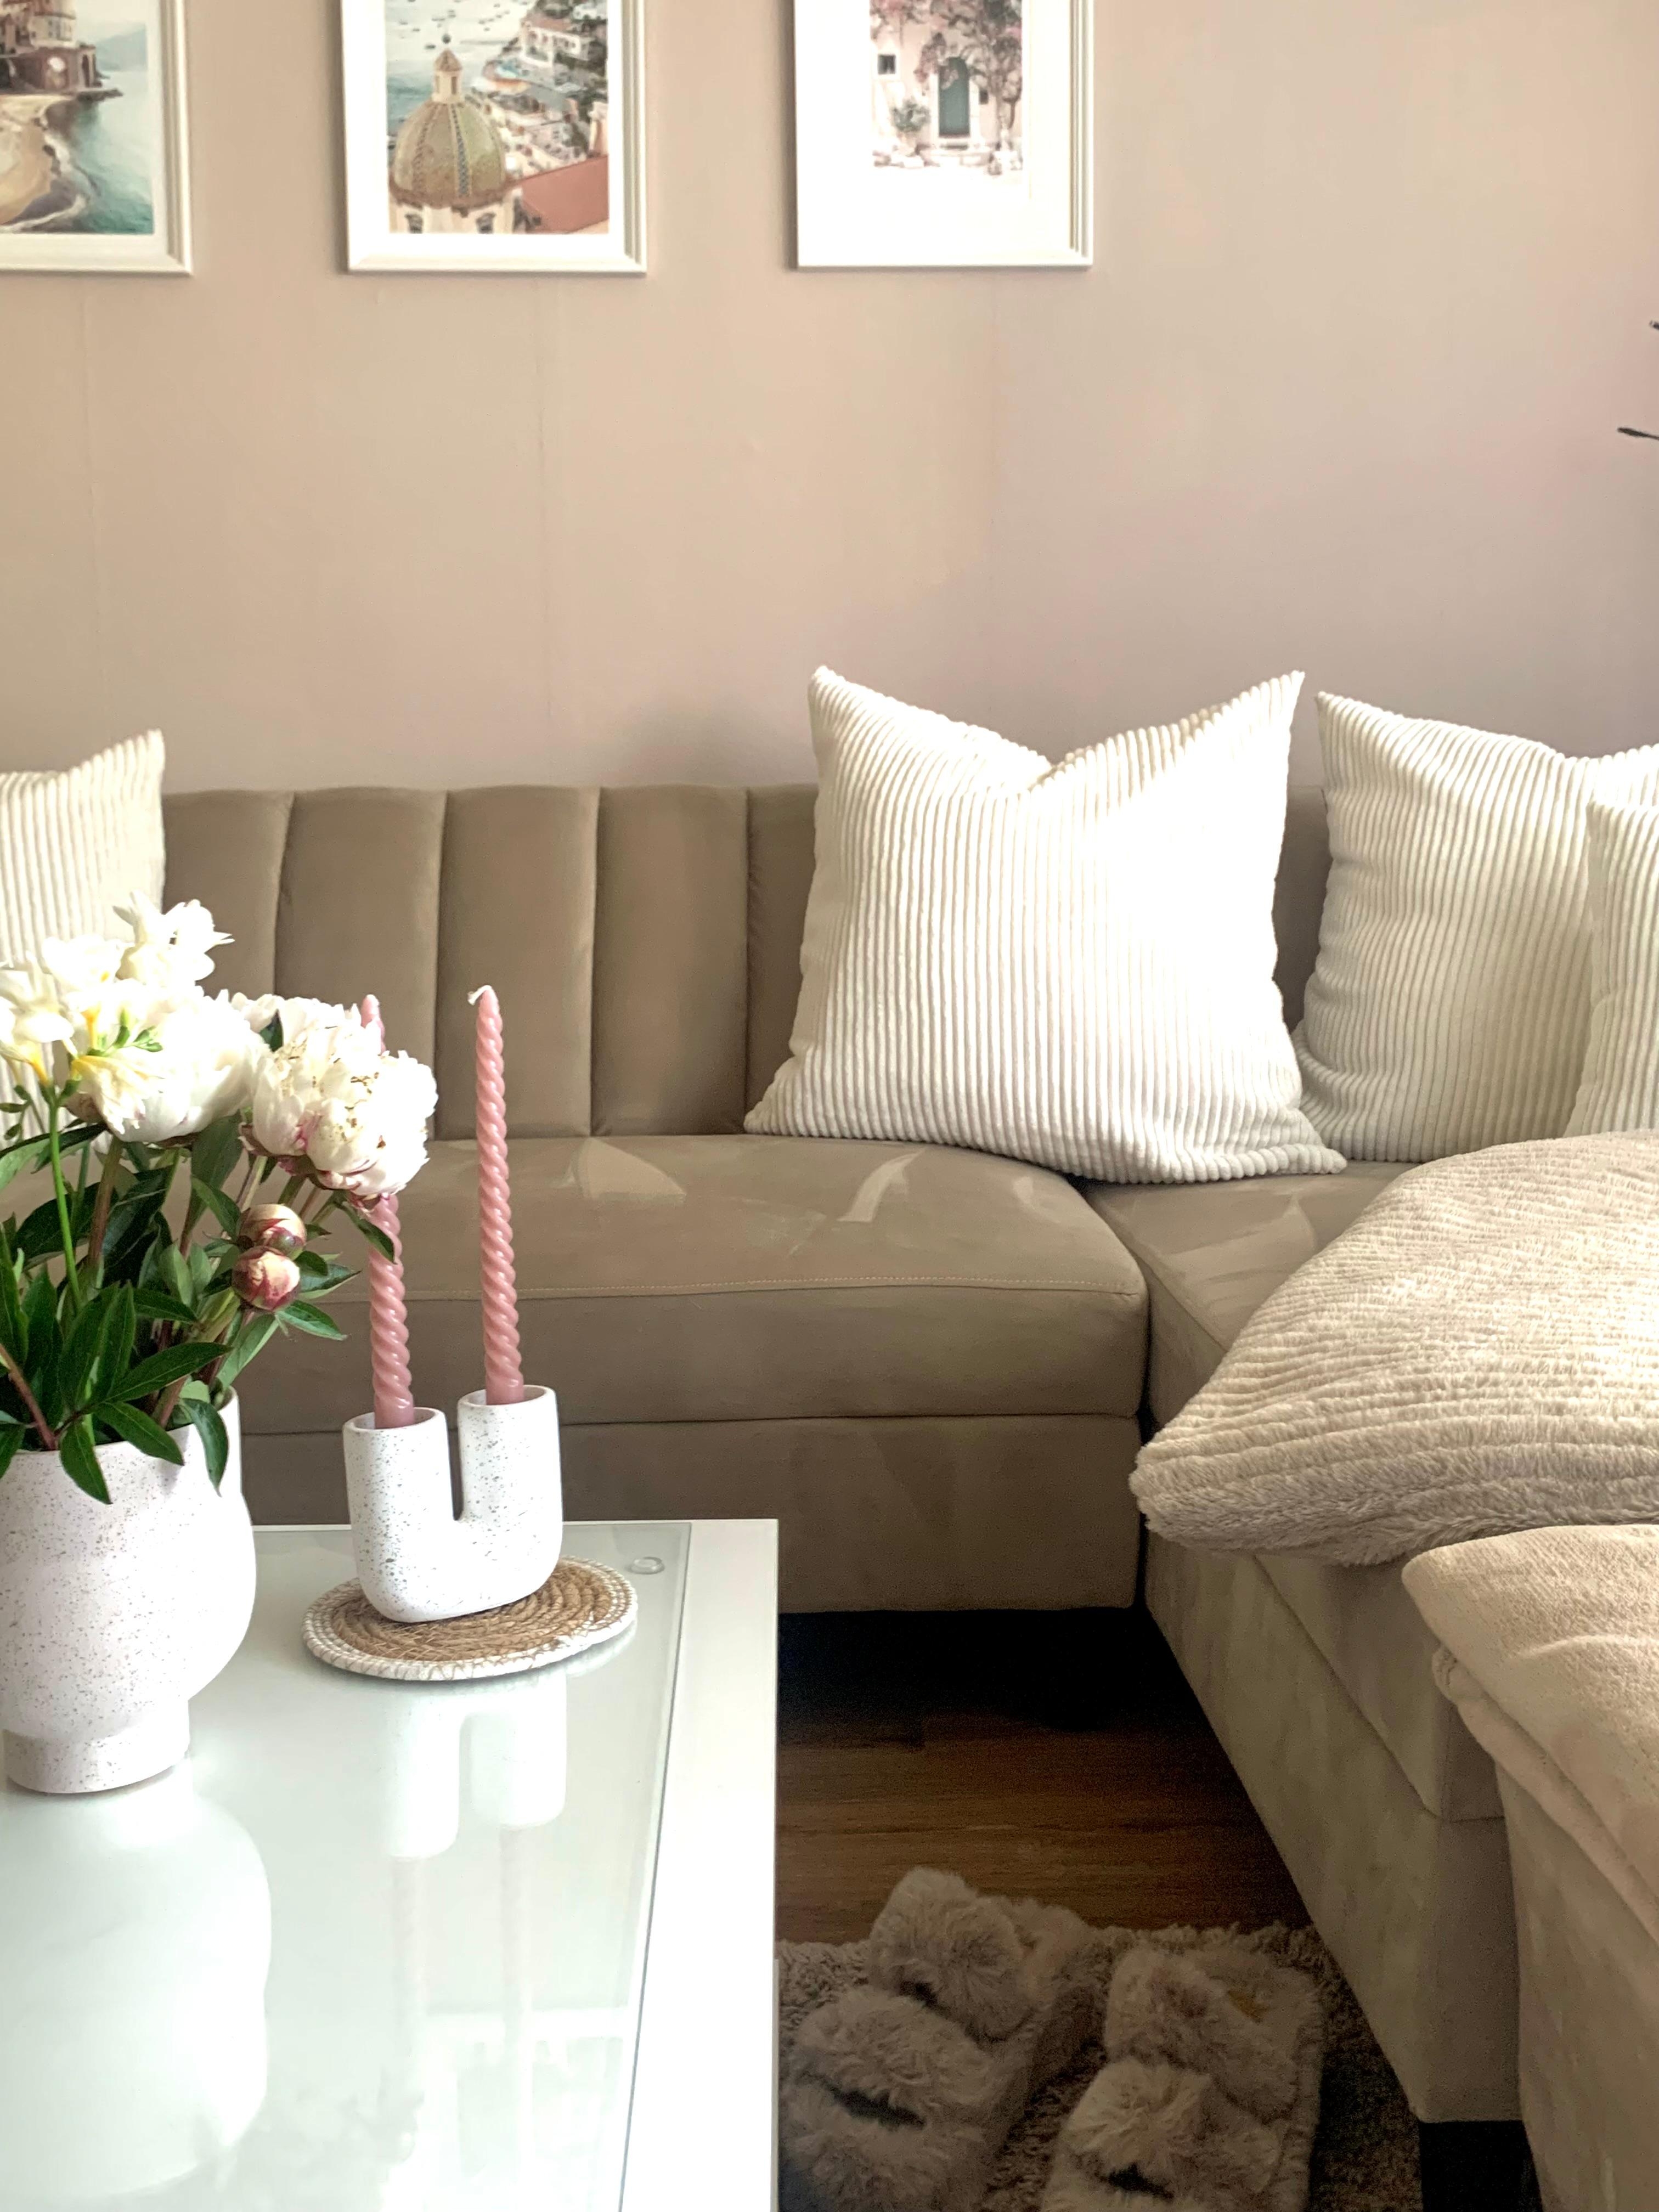 Helles Wohnen 
🤍
#couch #wohnzimmer #bilder #kissen #samt #flower #kerzen #vase #plaid #couchtisch #glas #teppich